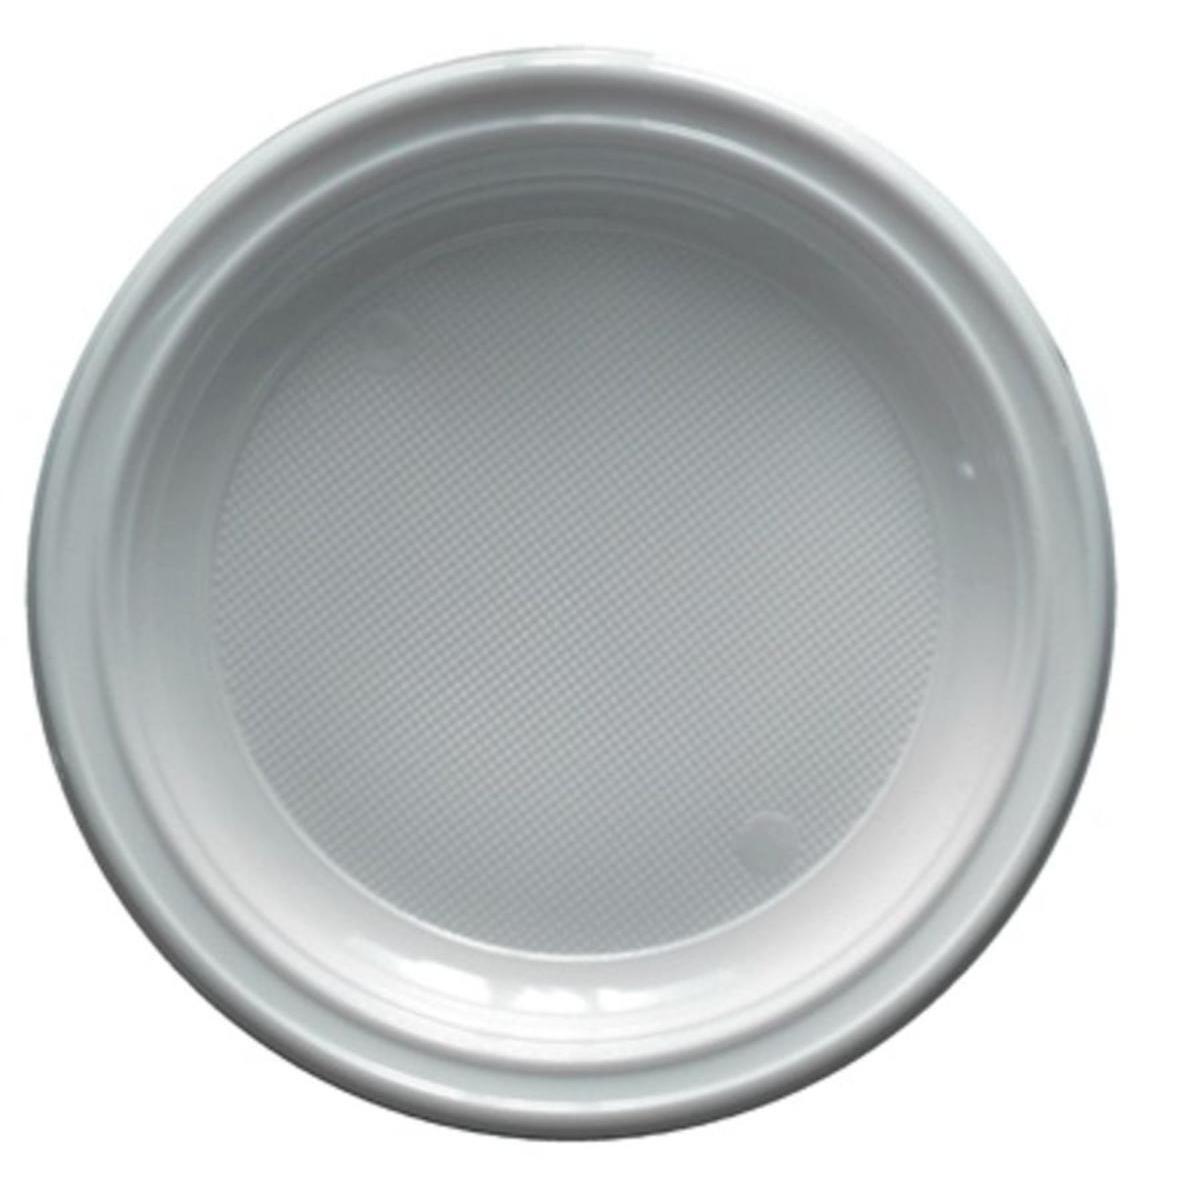 Lot de 50 assiettes rondes Gappy - 17 cm -Polystyrène- Blanc